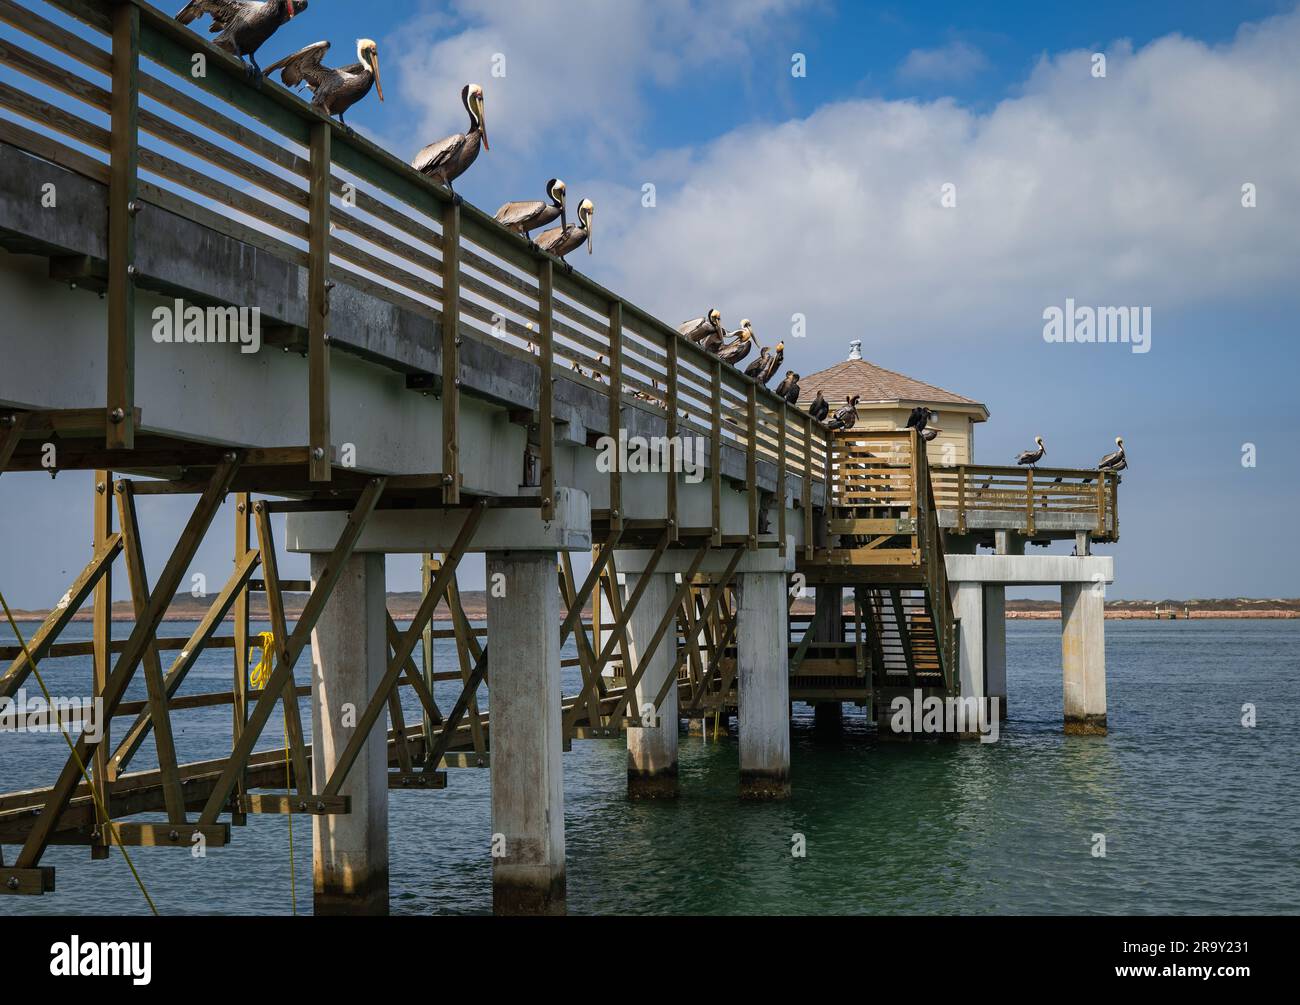 Pier oder Dock, über Wasser, mit braunen Pelikanen und Kormoranvögeln hoch oben auf dem Geländer, auf der Suche nach Nahrung. Stockfoto